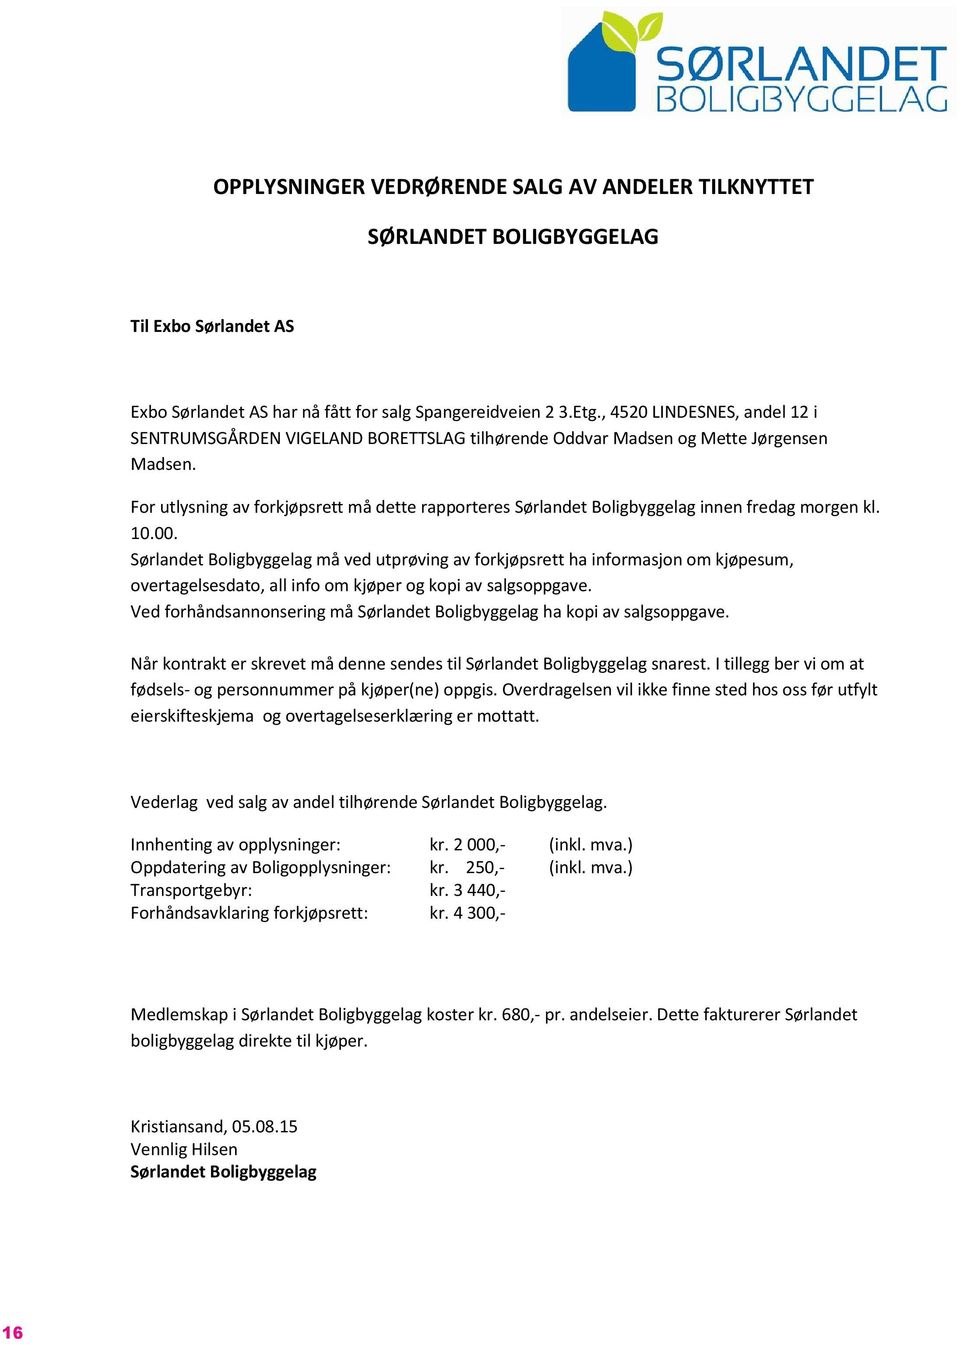 For utlysning av forkjøpsrett må dette rapporteres Sørlandet Boligbyggelag innen fredag morgen kl. 10.00.